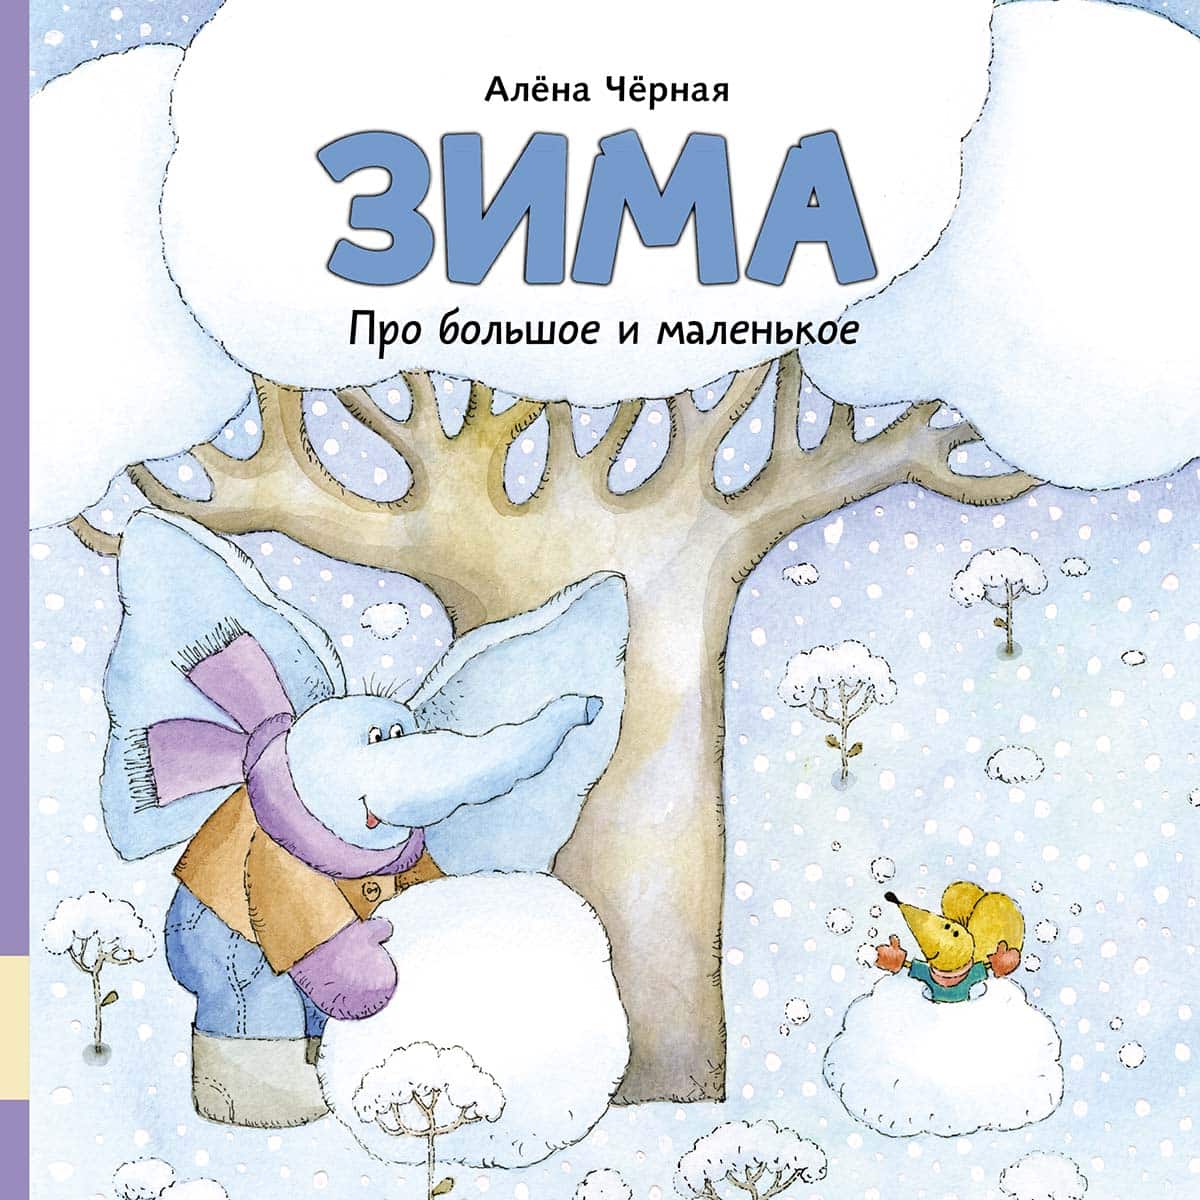 Выбор деда Мороза: 5 снежных книг, которые можно положить под ёлку